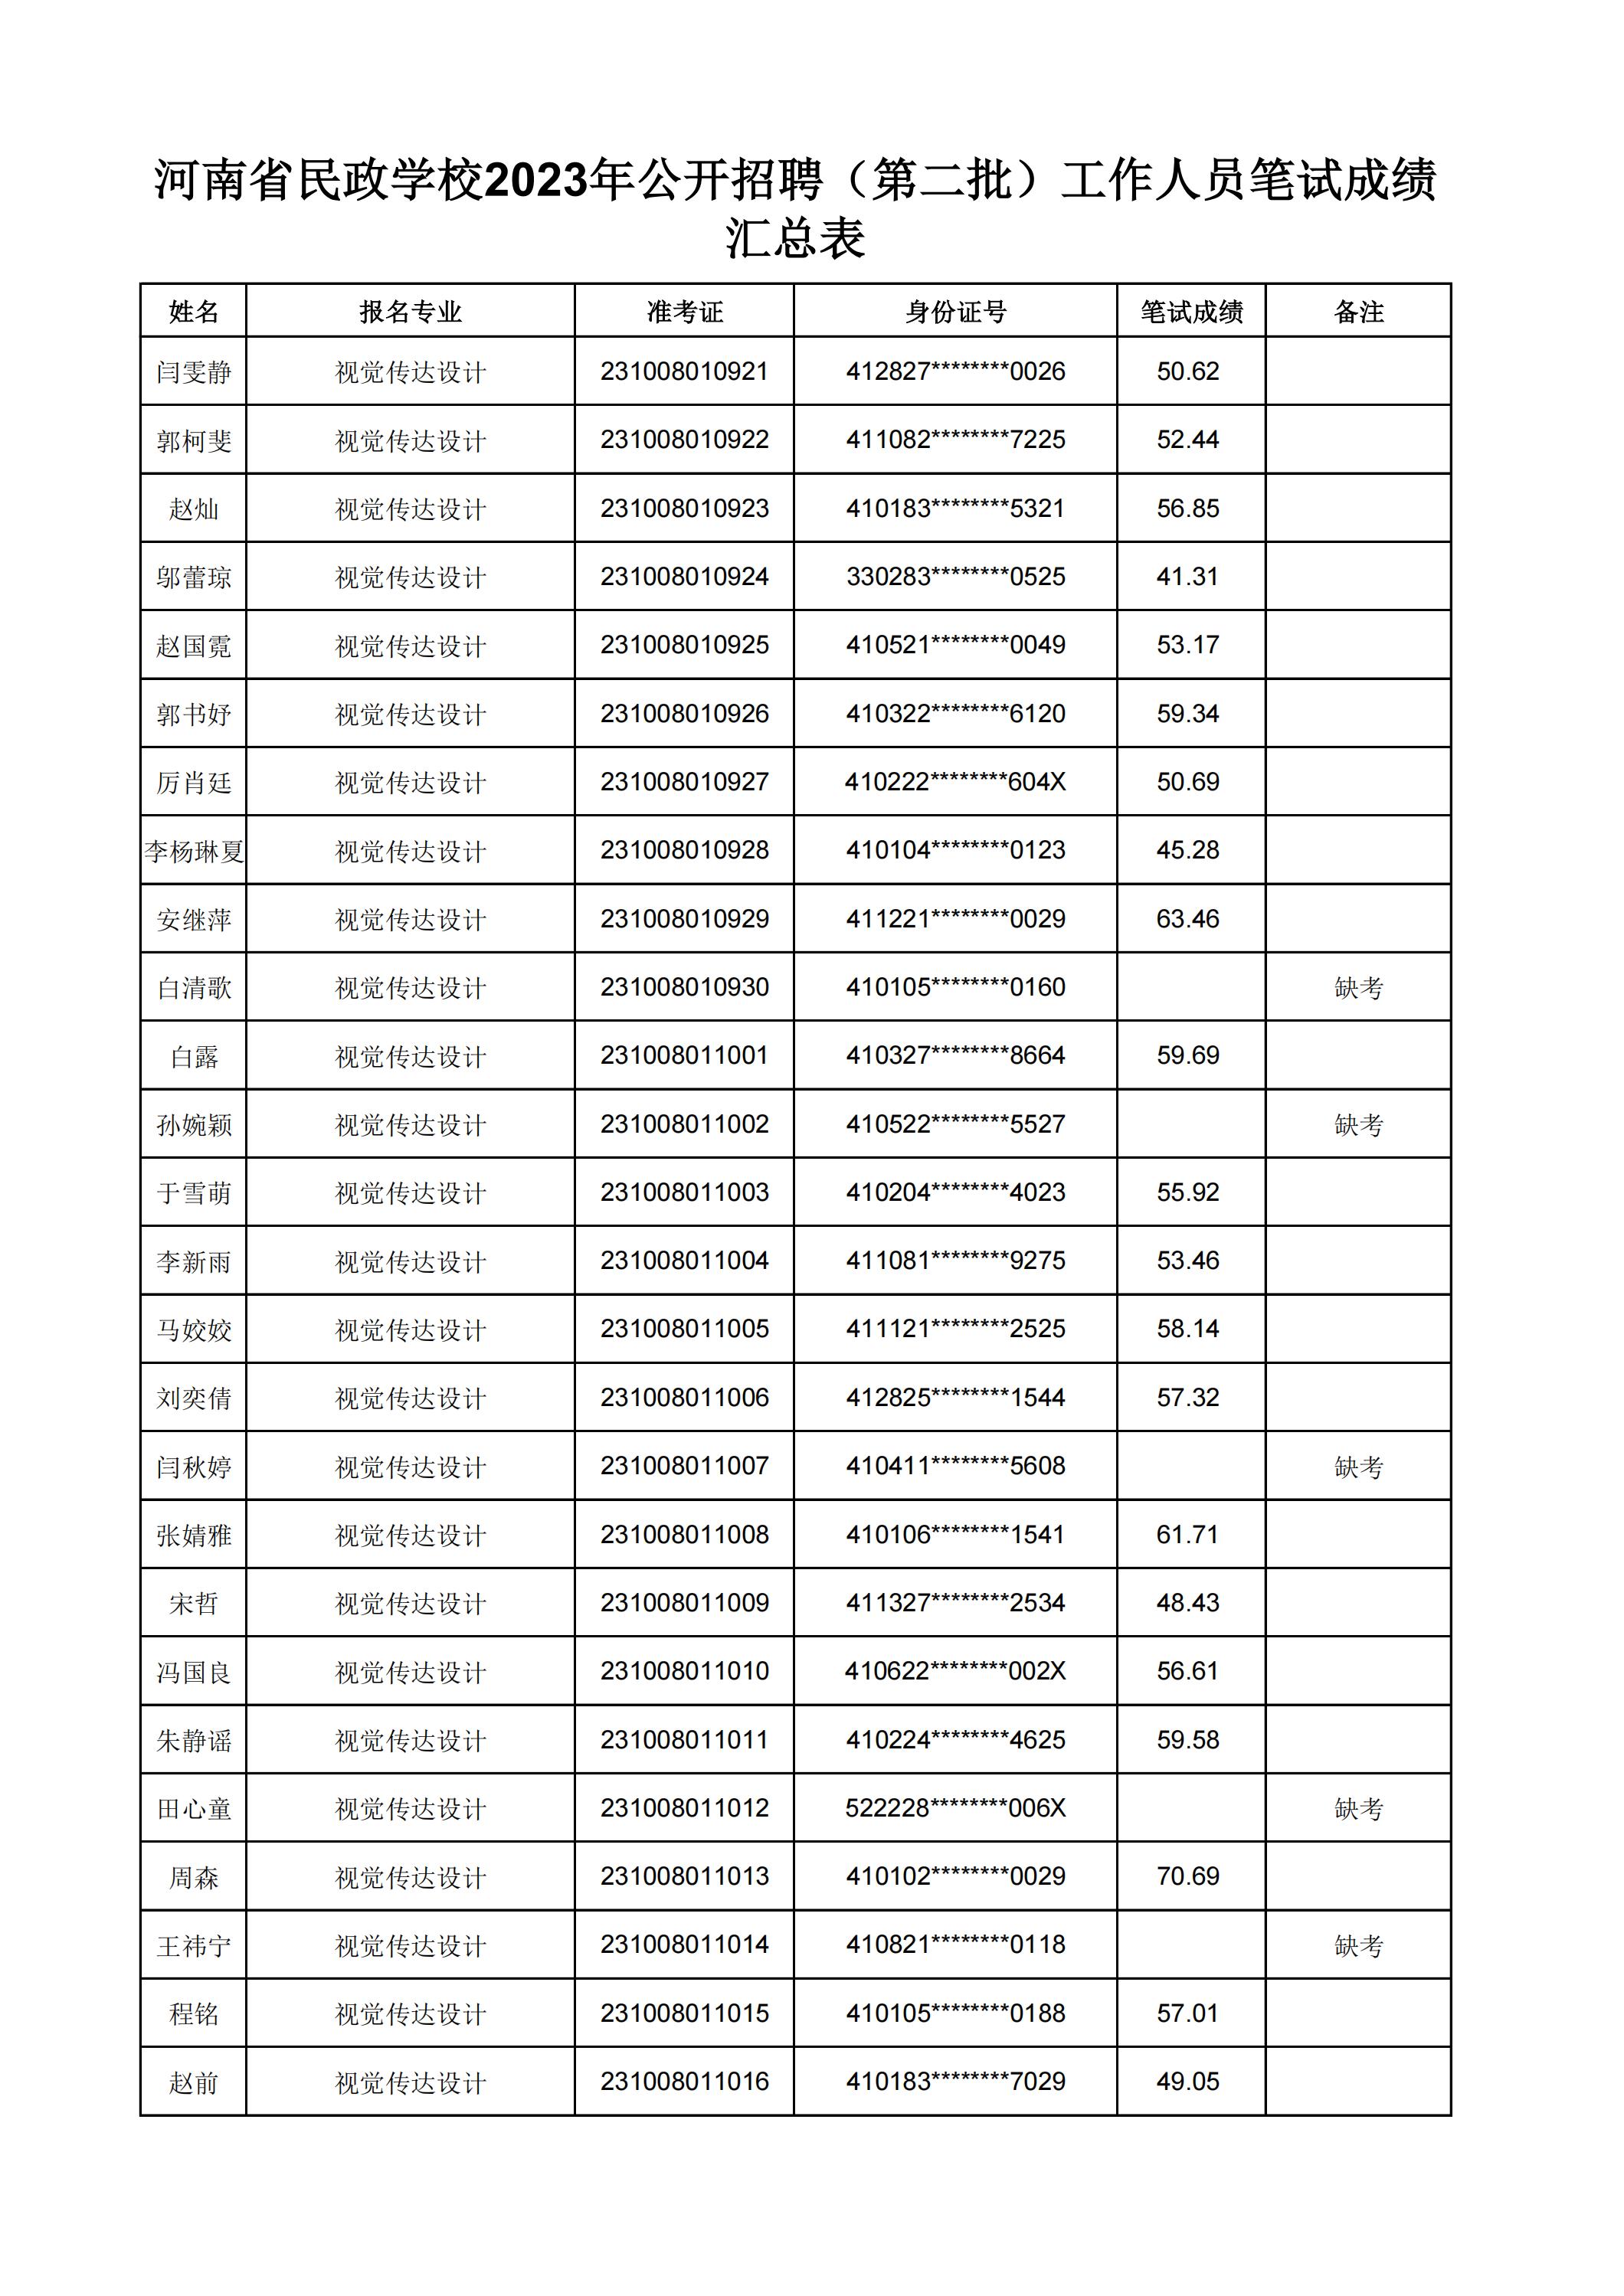 河南省民政学校2023年公开招聘（第二批）工作人员笔试成绩汇总表(2)_10.jpg